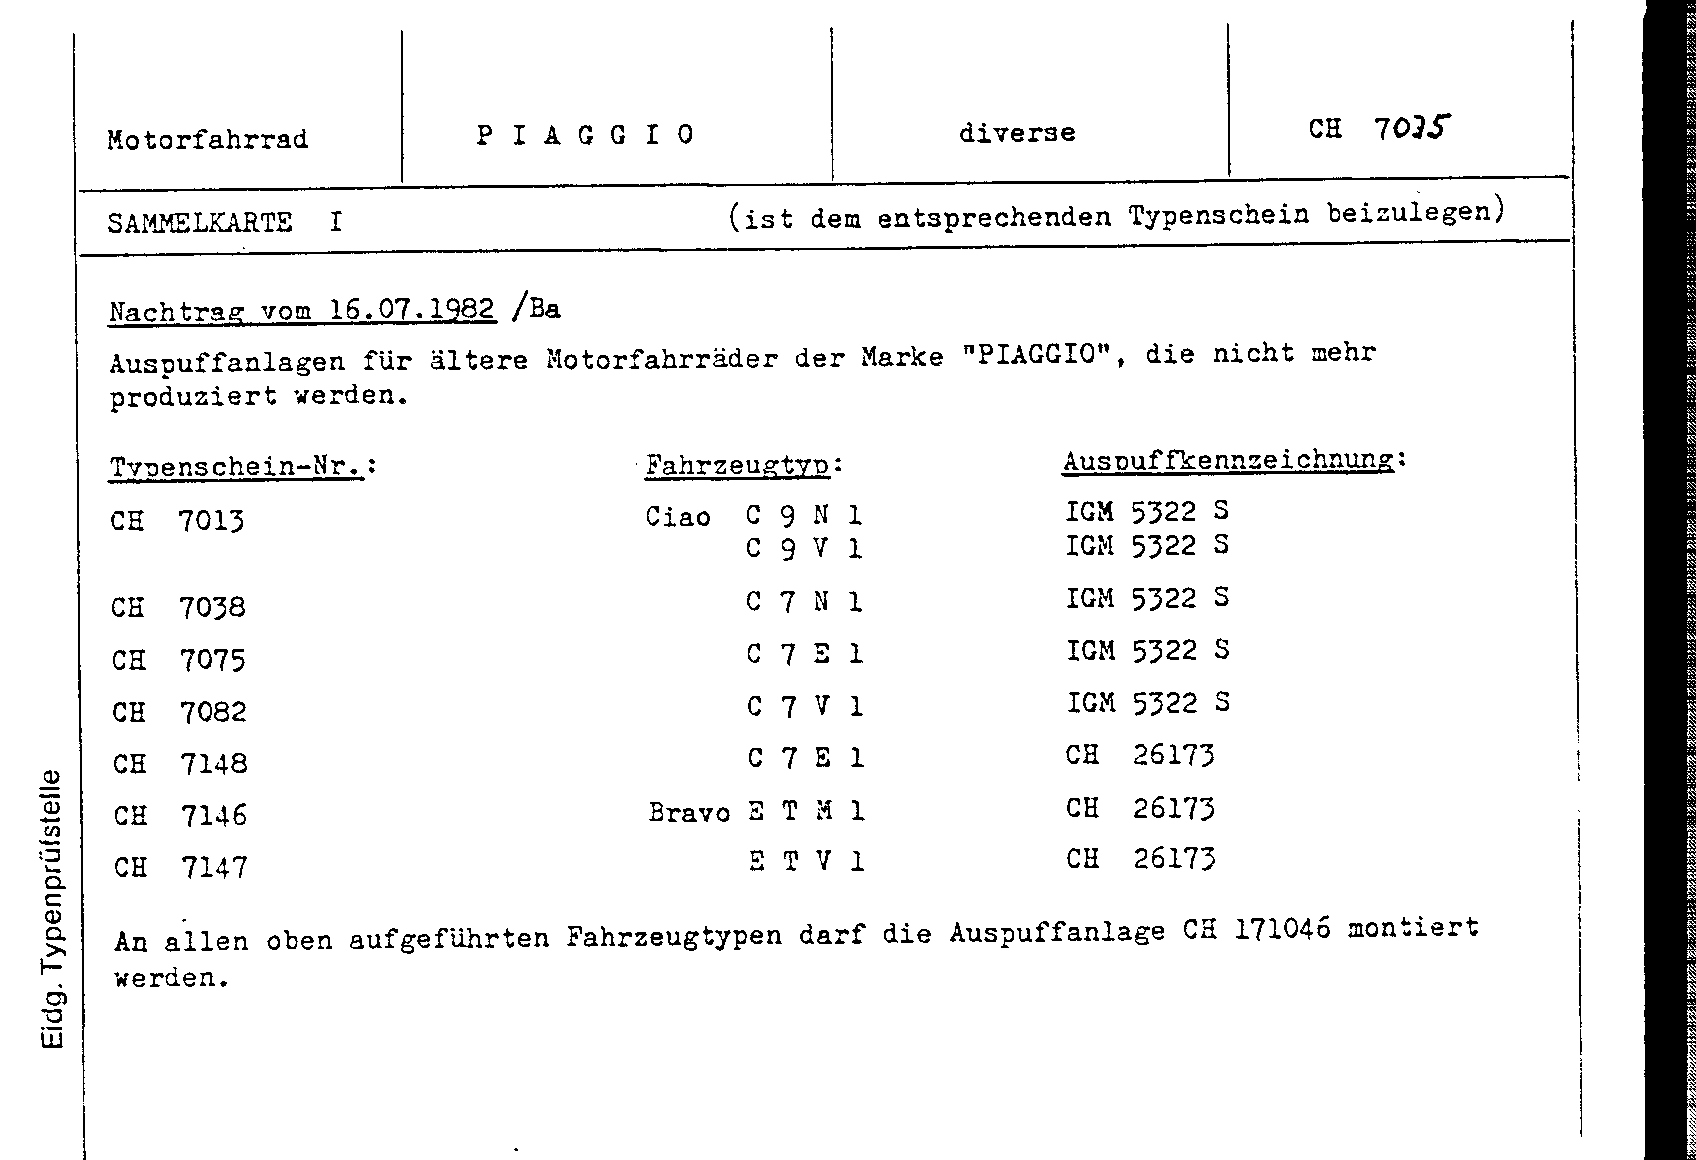 Swiss Certificate of Conformity 7013 German Page 3 (DE.7035_SK.1.png)